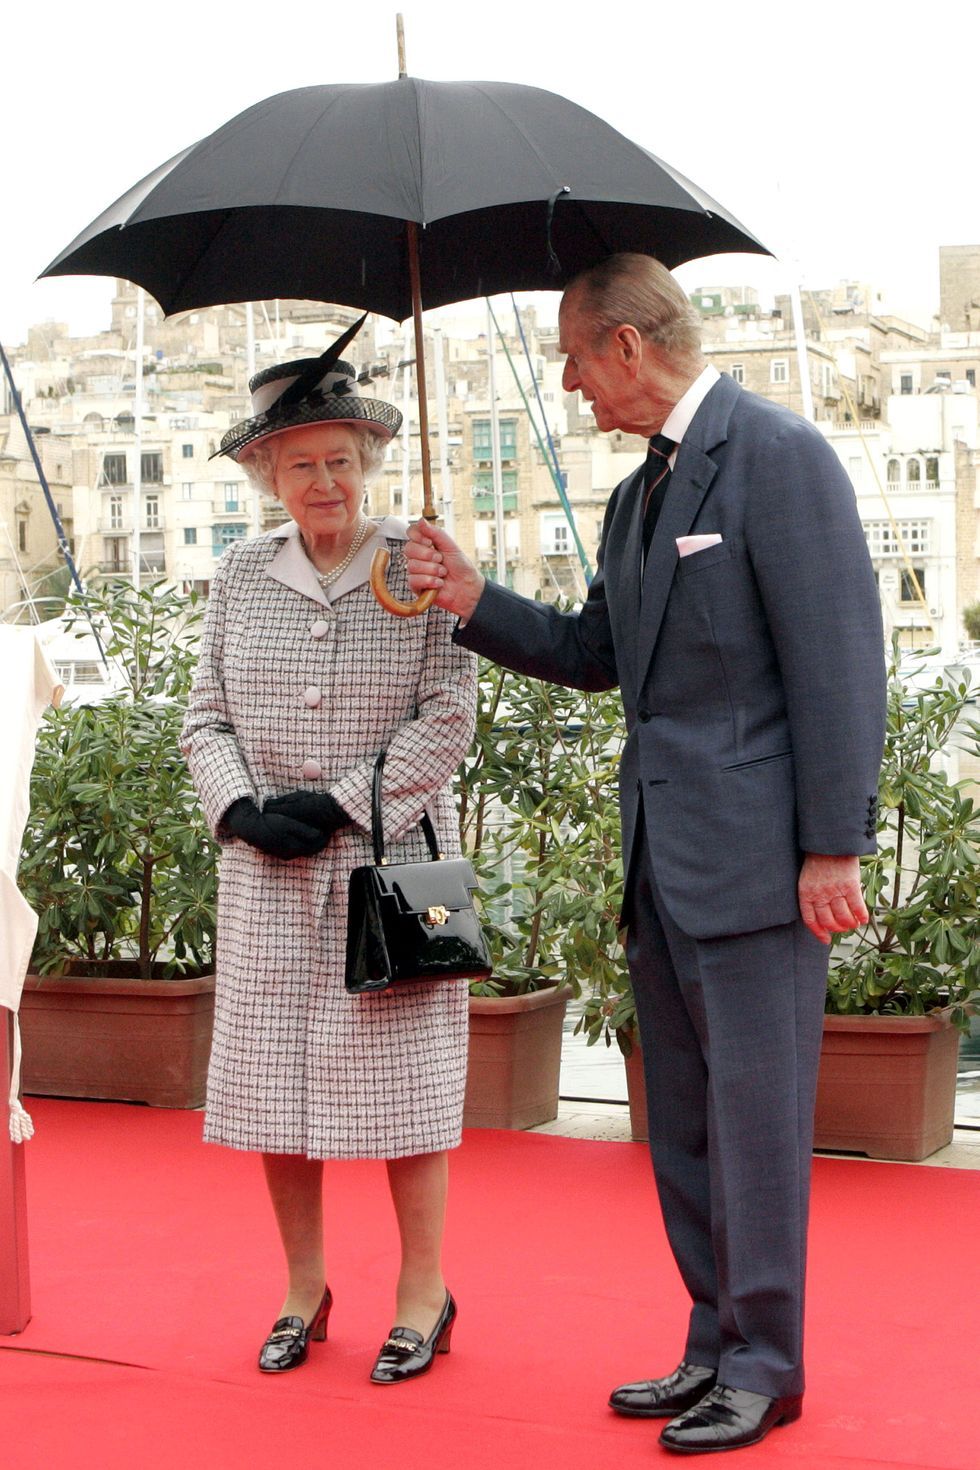 Mengenang Gaya Ratu Elizabeth & Pangeran Philip dari Masa ke Masa